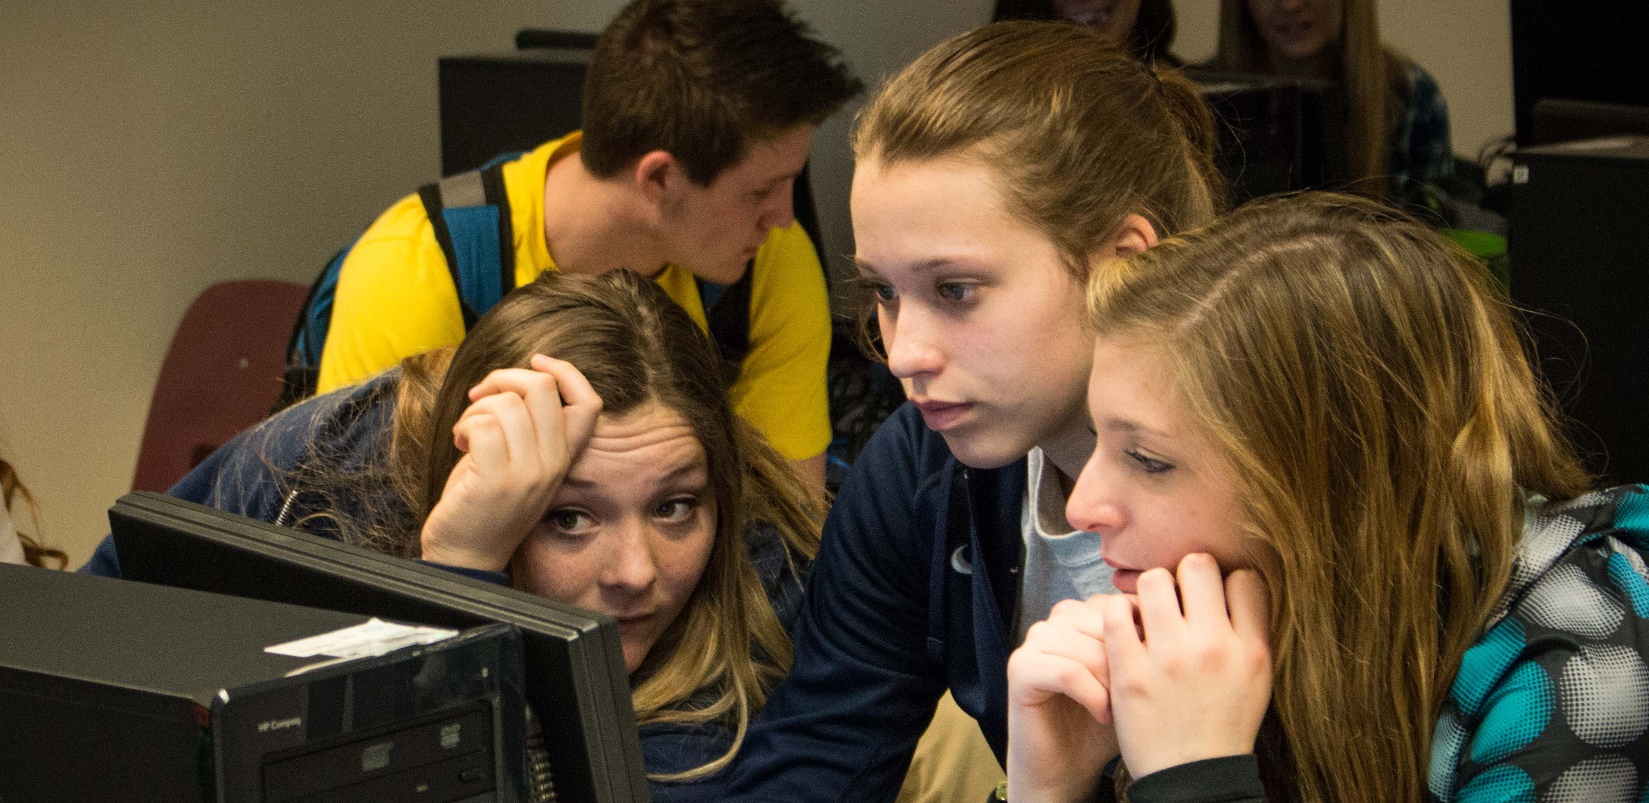 teens looking at a computer screen